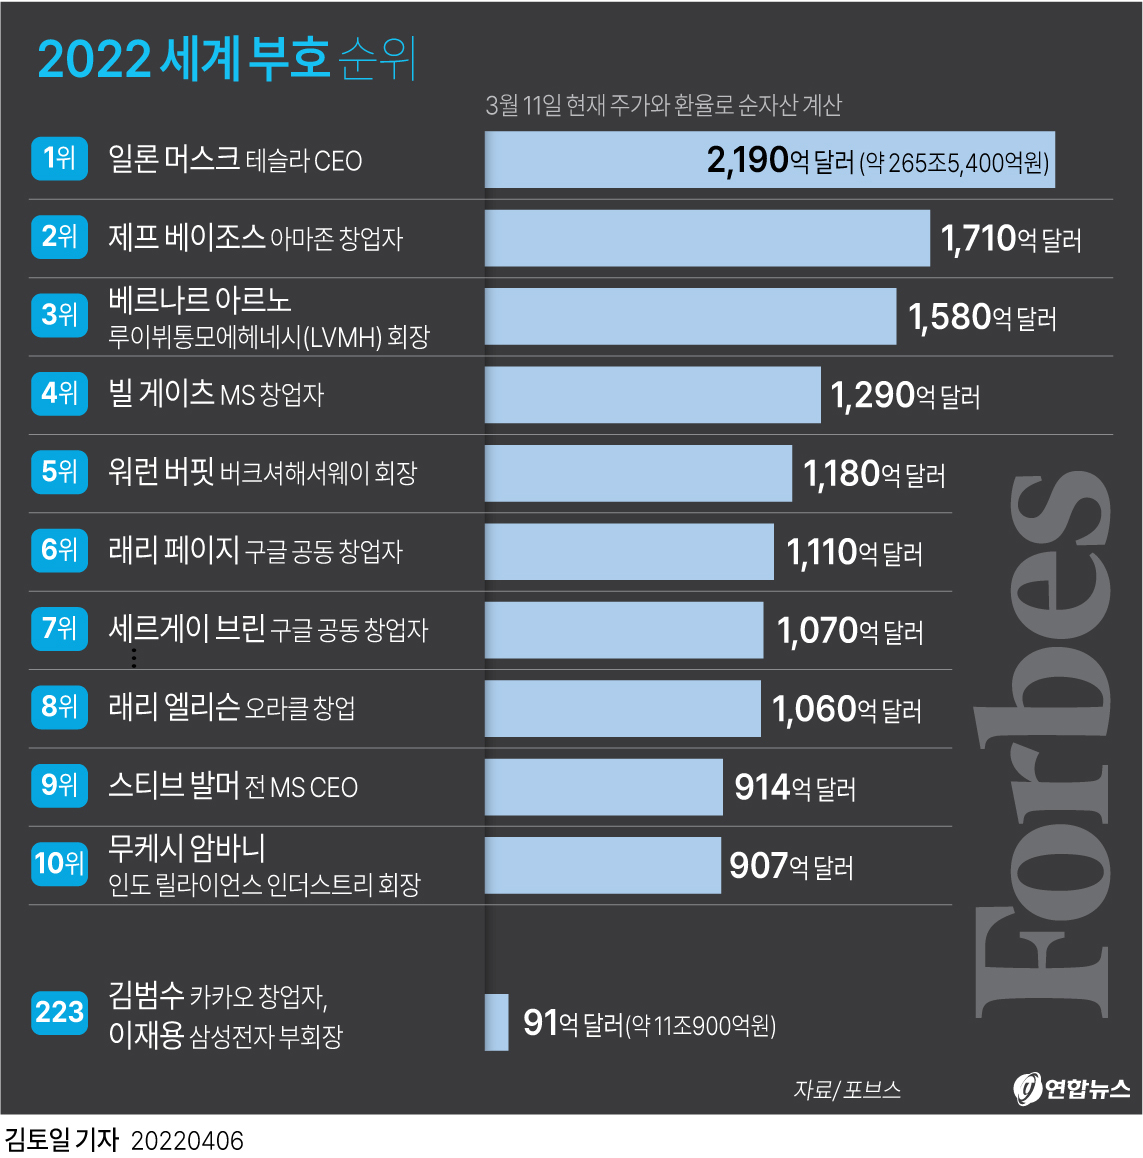 [그래픽] 2022 세계 억만장자 순위